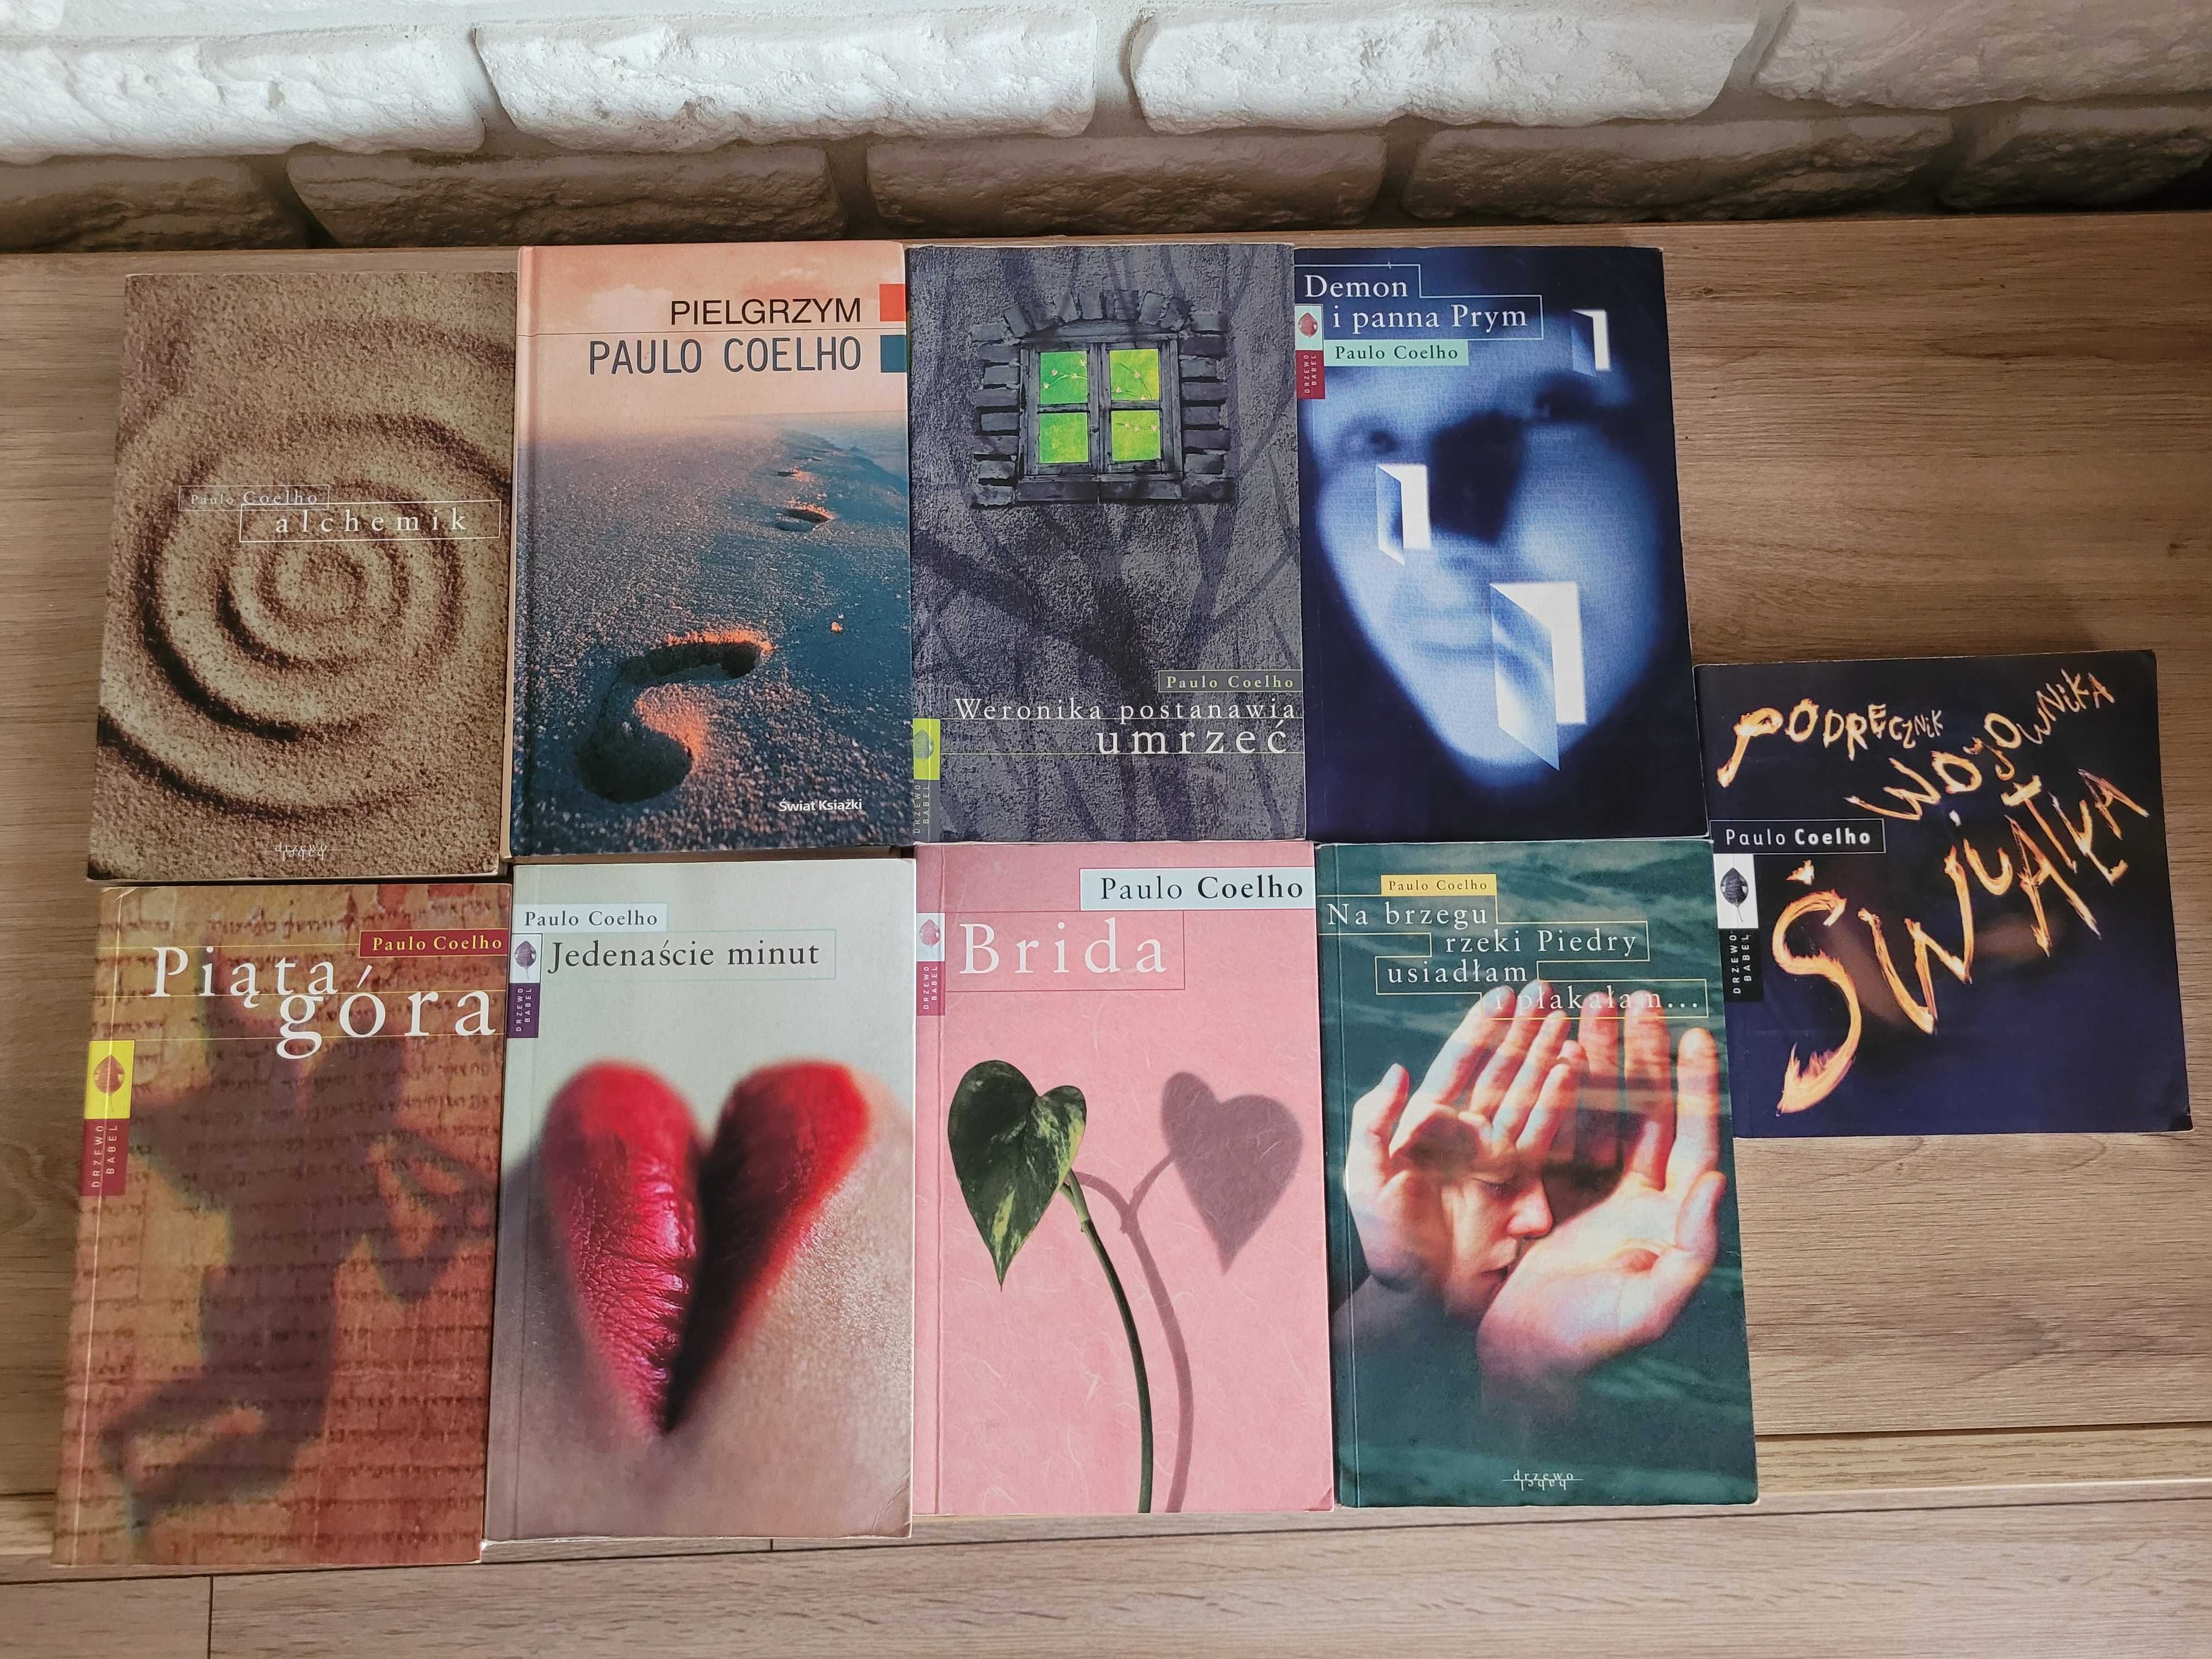 Paulo Coelho 9 książek